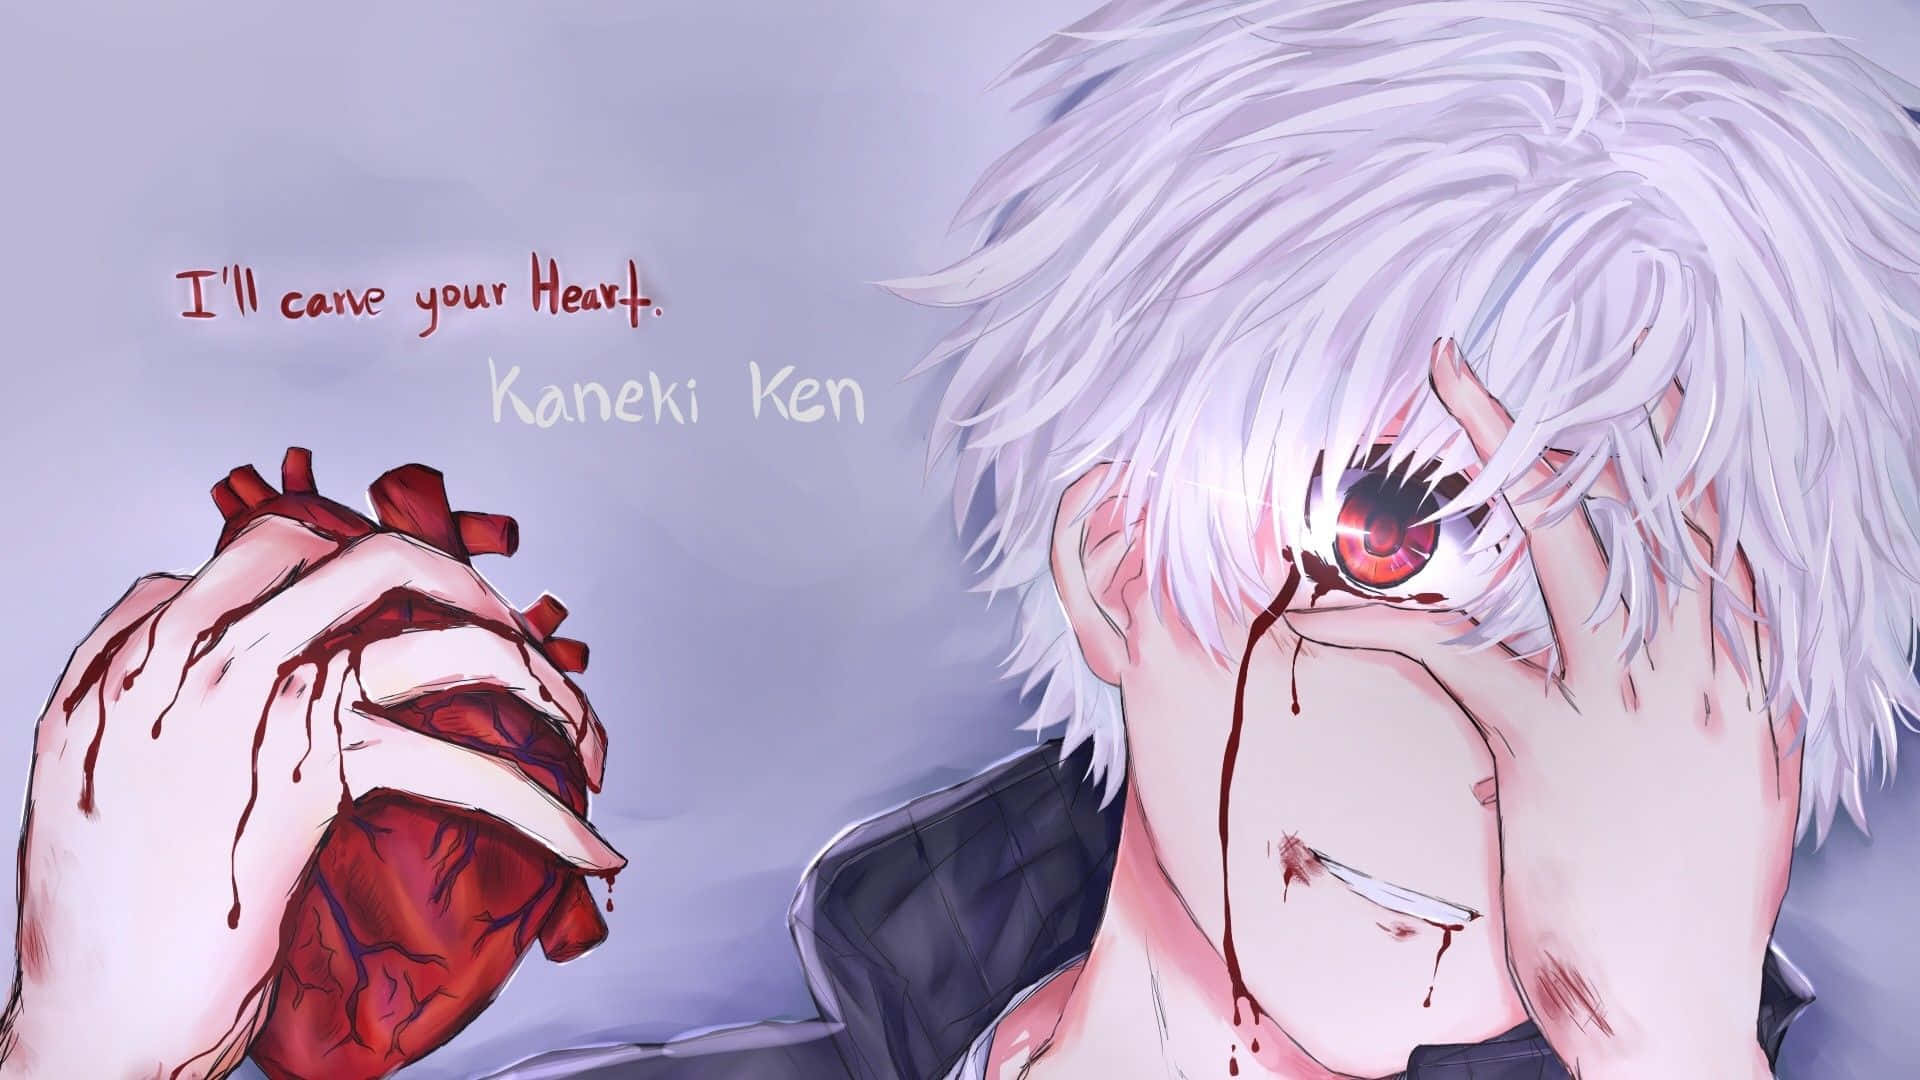 Anime Senpai - Ken kaneki 🔥 Anime: Tokyo ghoul | Facebook